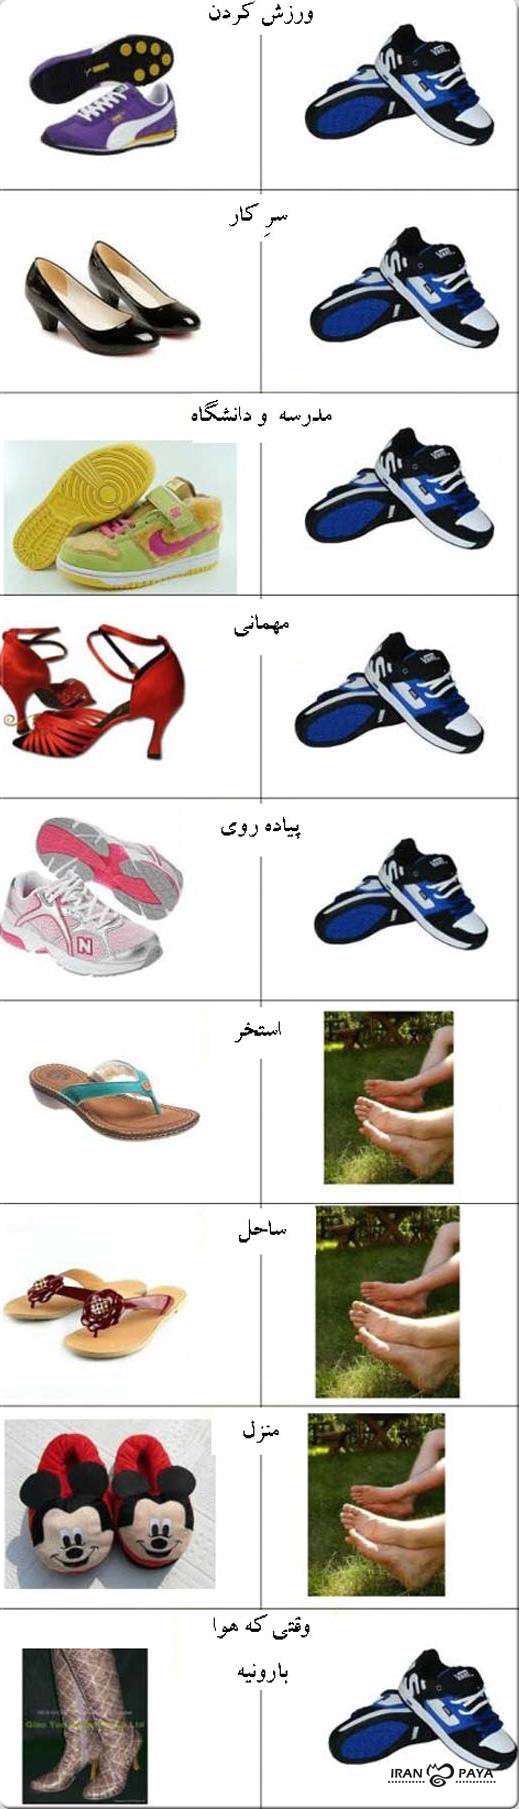 کفش دخترها و پسرها در موقعیتهای مختلف...